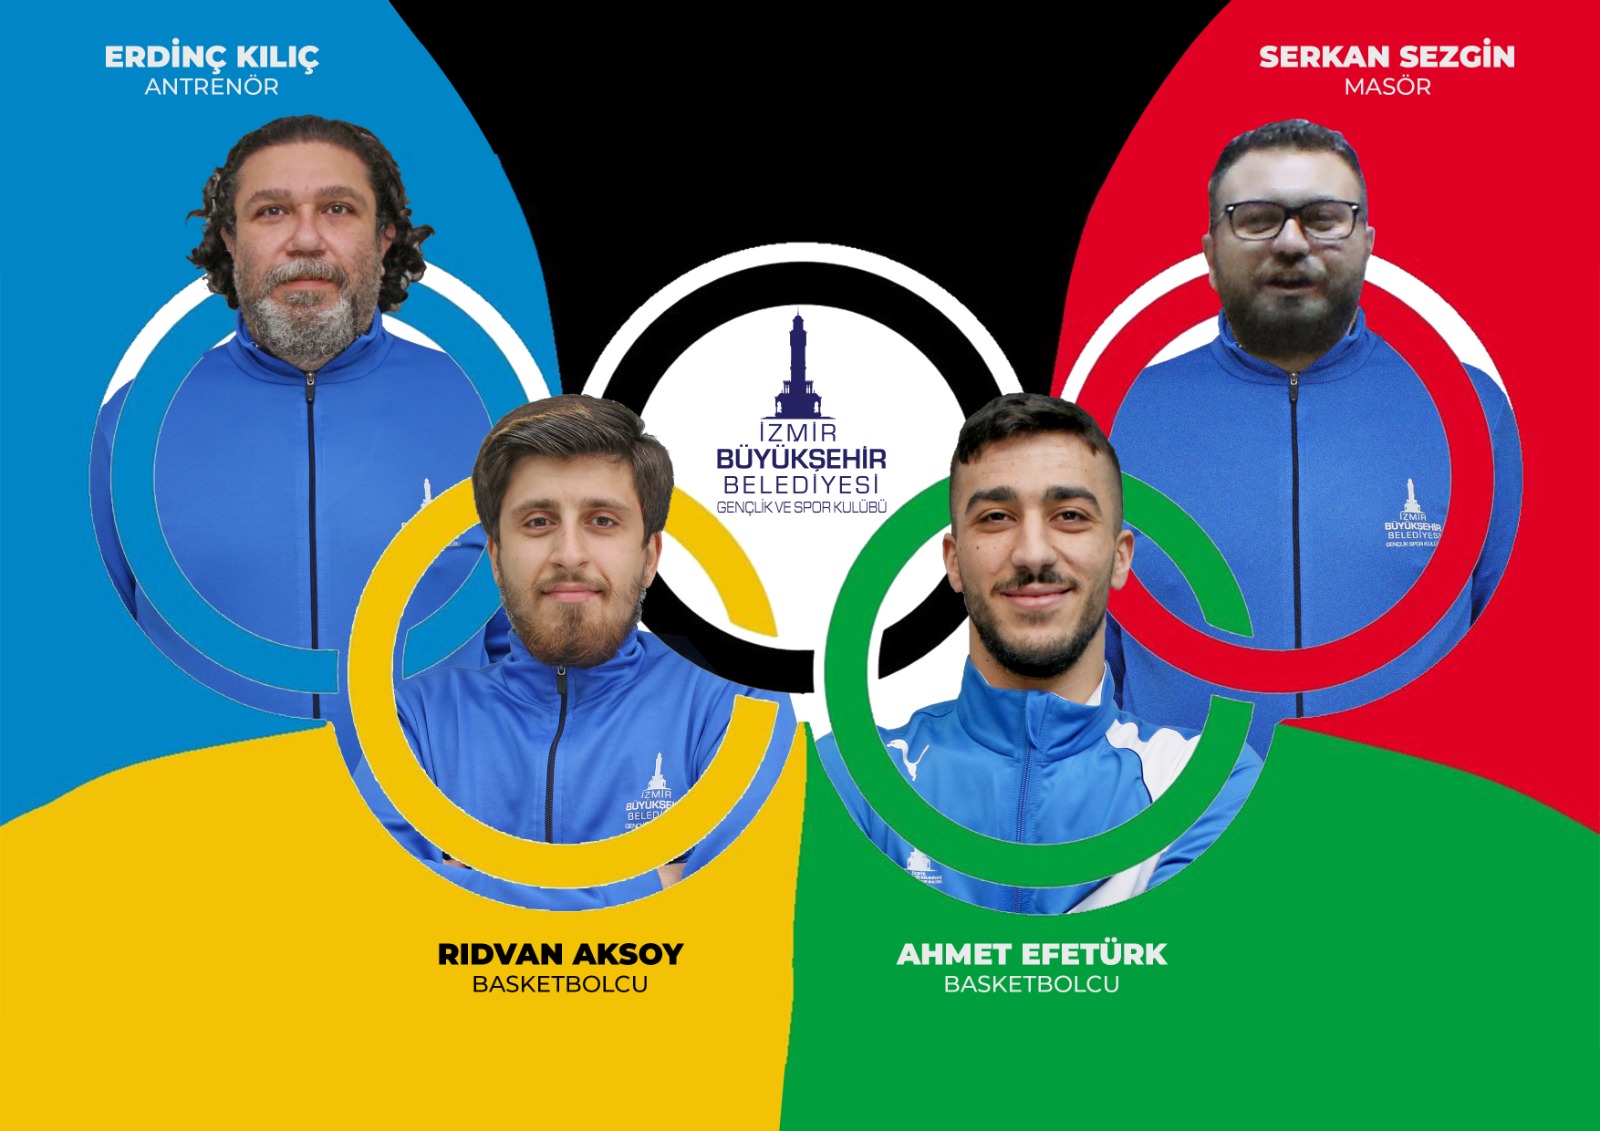 İzmir Büyükşehir Belediyespor’dan dört isim Tokyo yolunda İzmir’in olimpiyat gururu